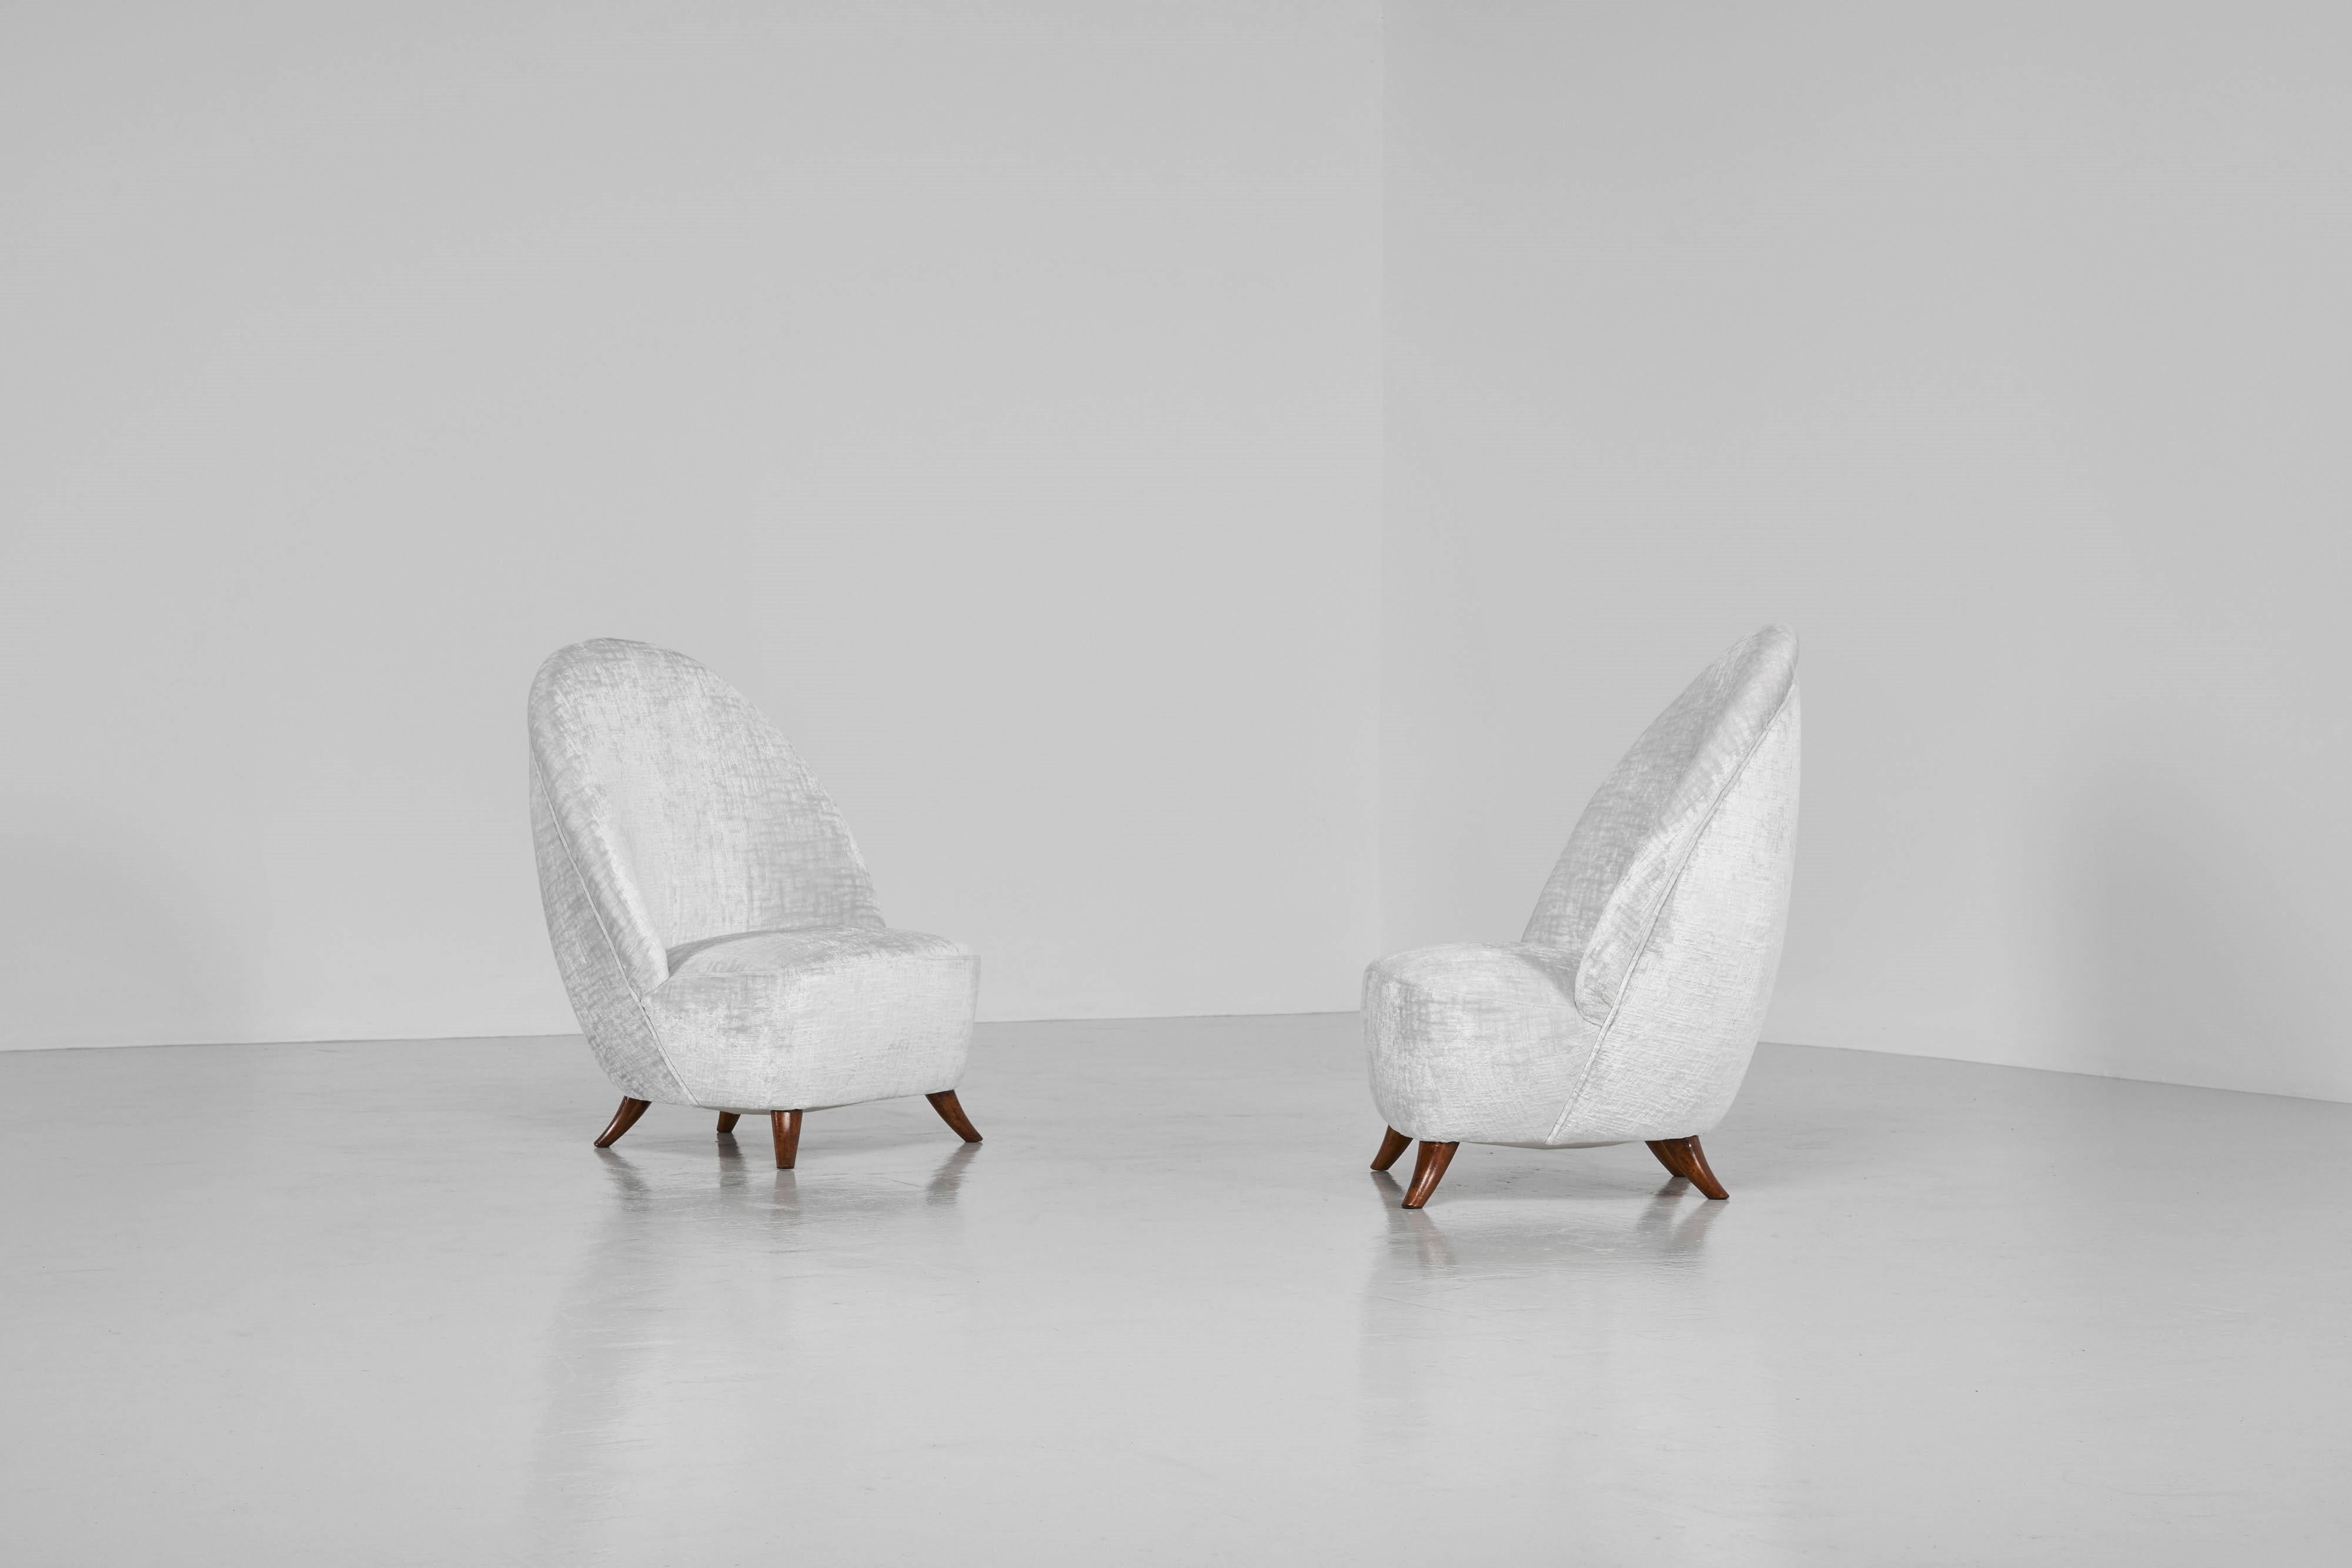 Hübsches Paar Beistellstühle oder Schlafzimmerstühle, entworfen von Guglielmo Ulrich, hergestellt von einem unbekannten Hersteller in Italien 1950. Die eiförmigen Stühle haben Beine aus massivem Walnussholz, die eine schöne und elegante Rundung